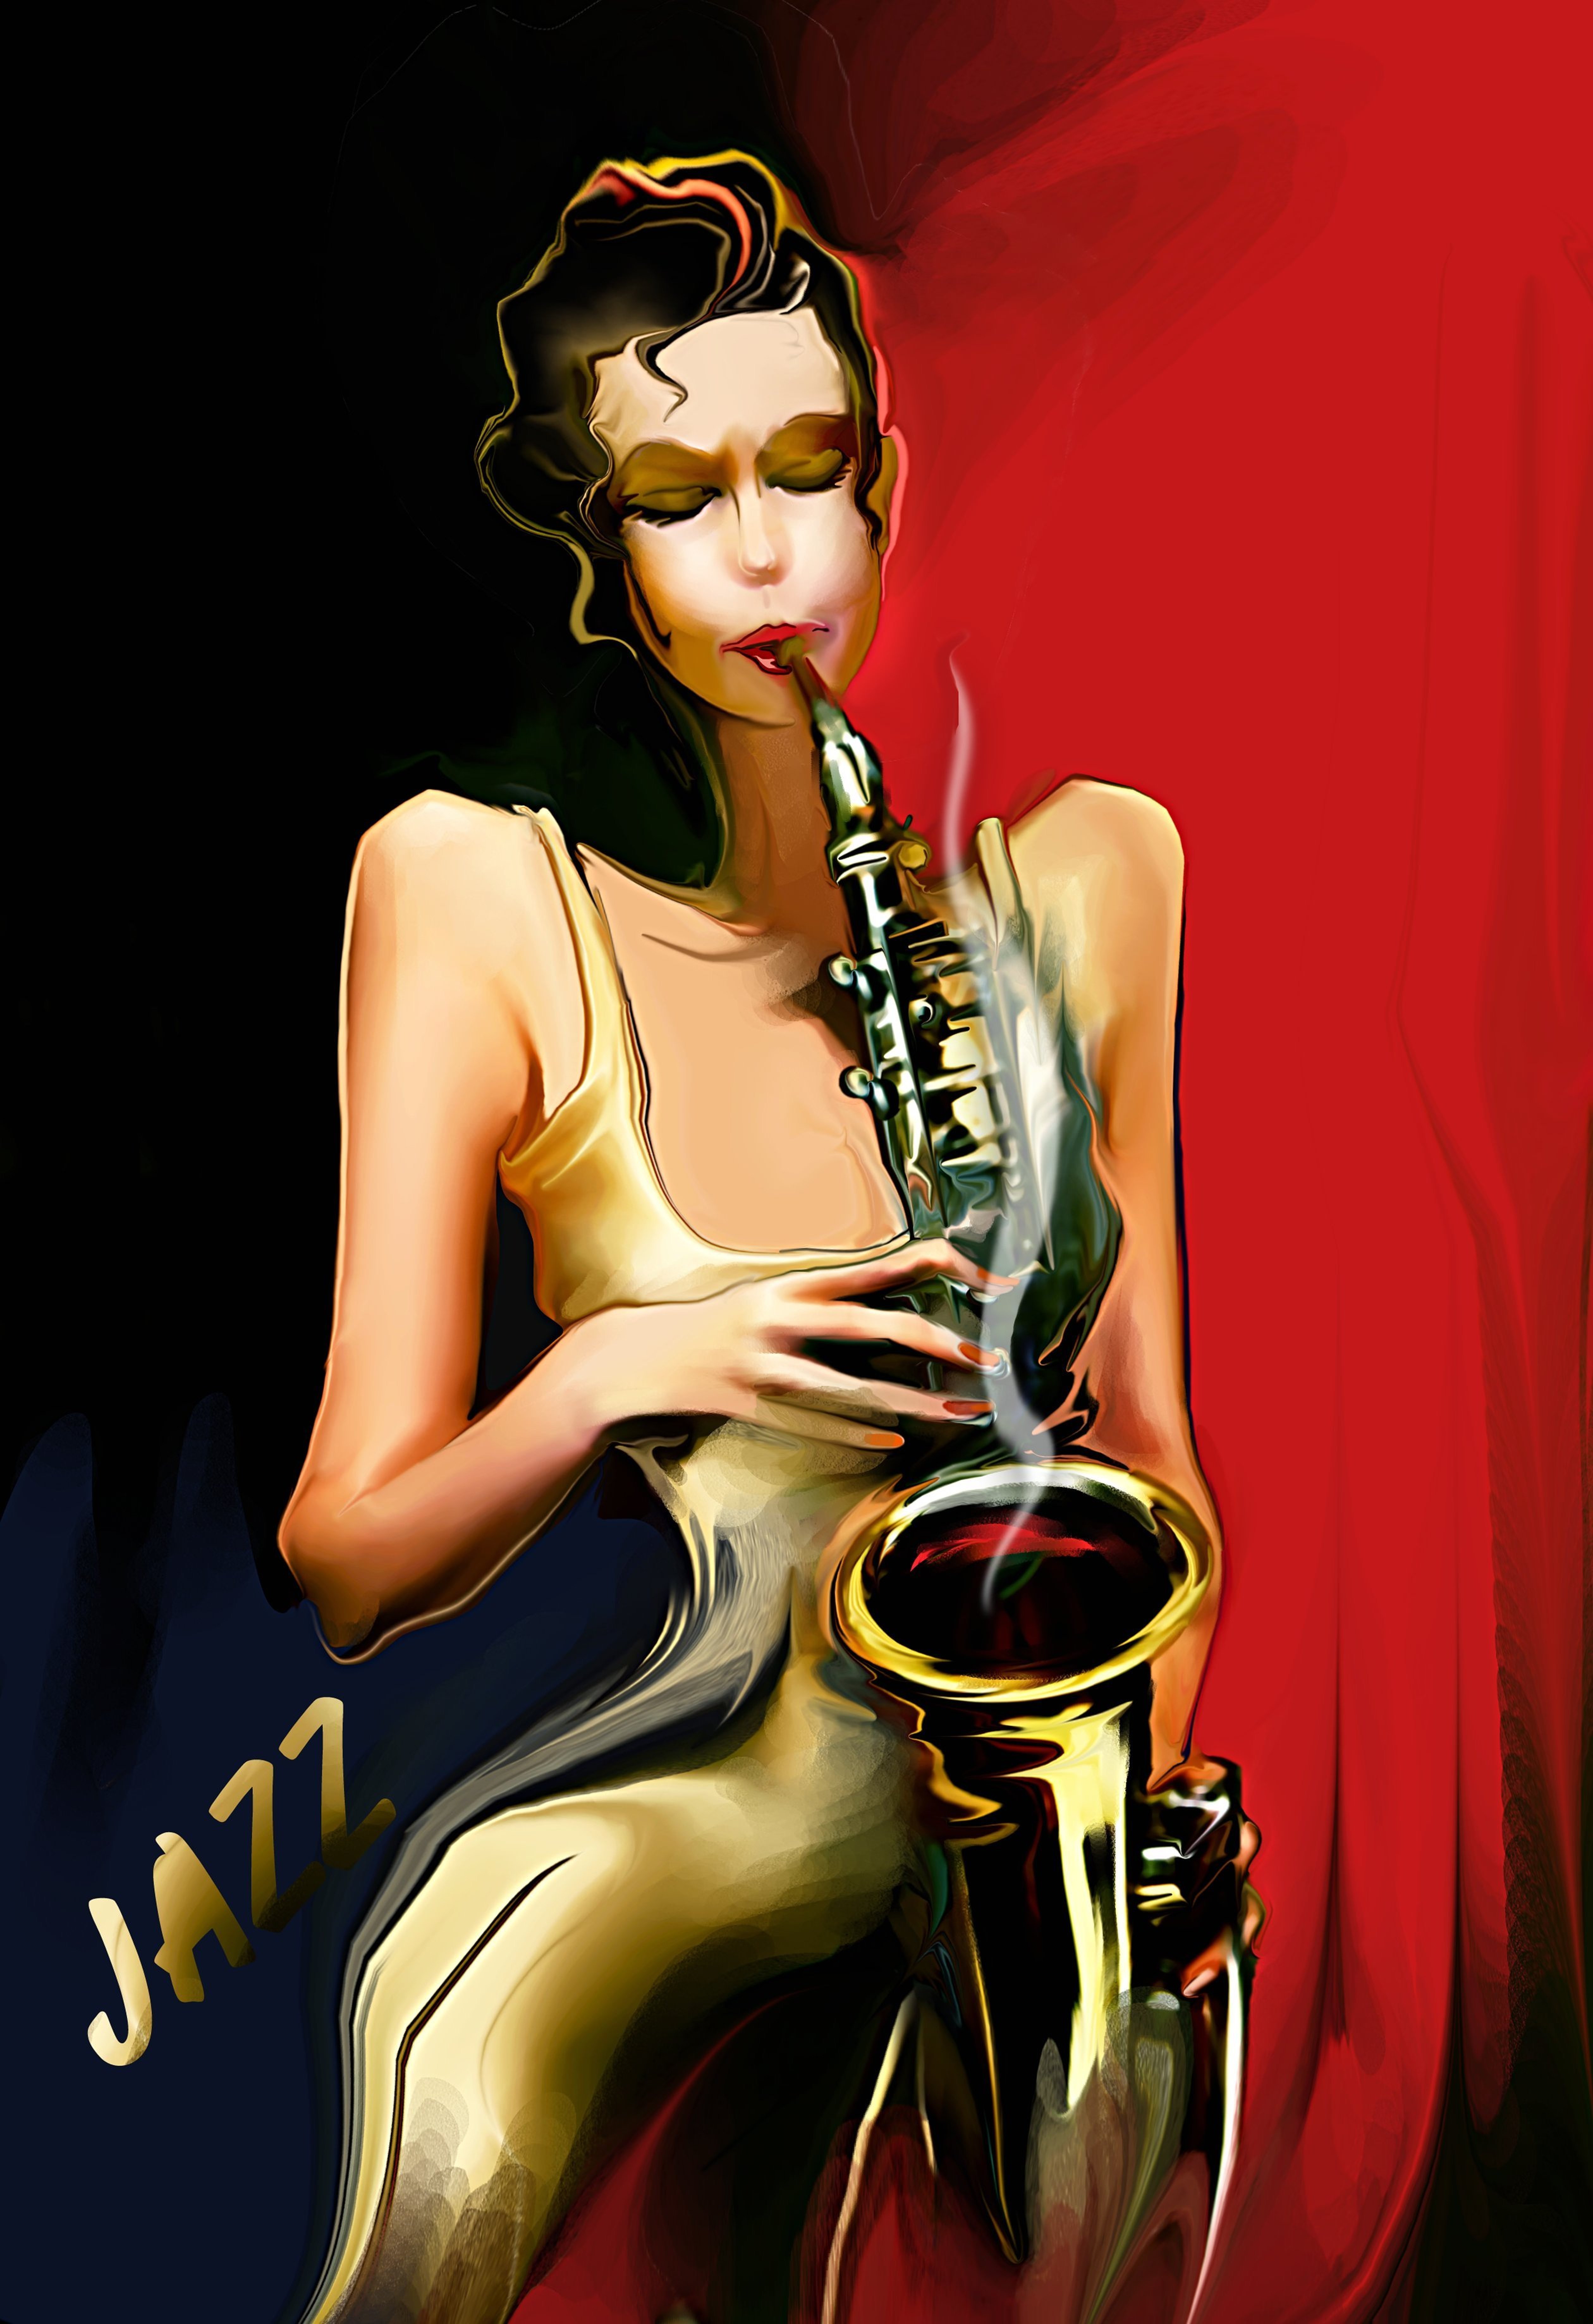 Женщина на саксофоне. Женщина с саксофоном. Иллюстрации в стиле джаз. Картины в джазовом стиле. Девушки в стиле джаз.